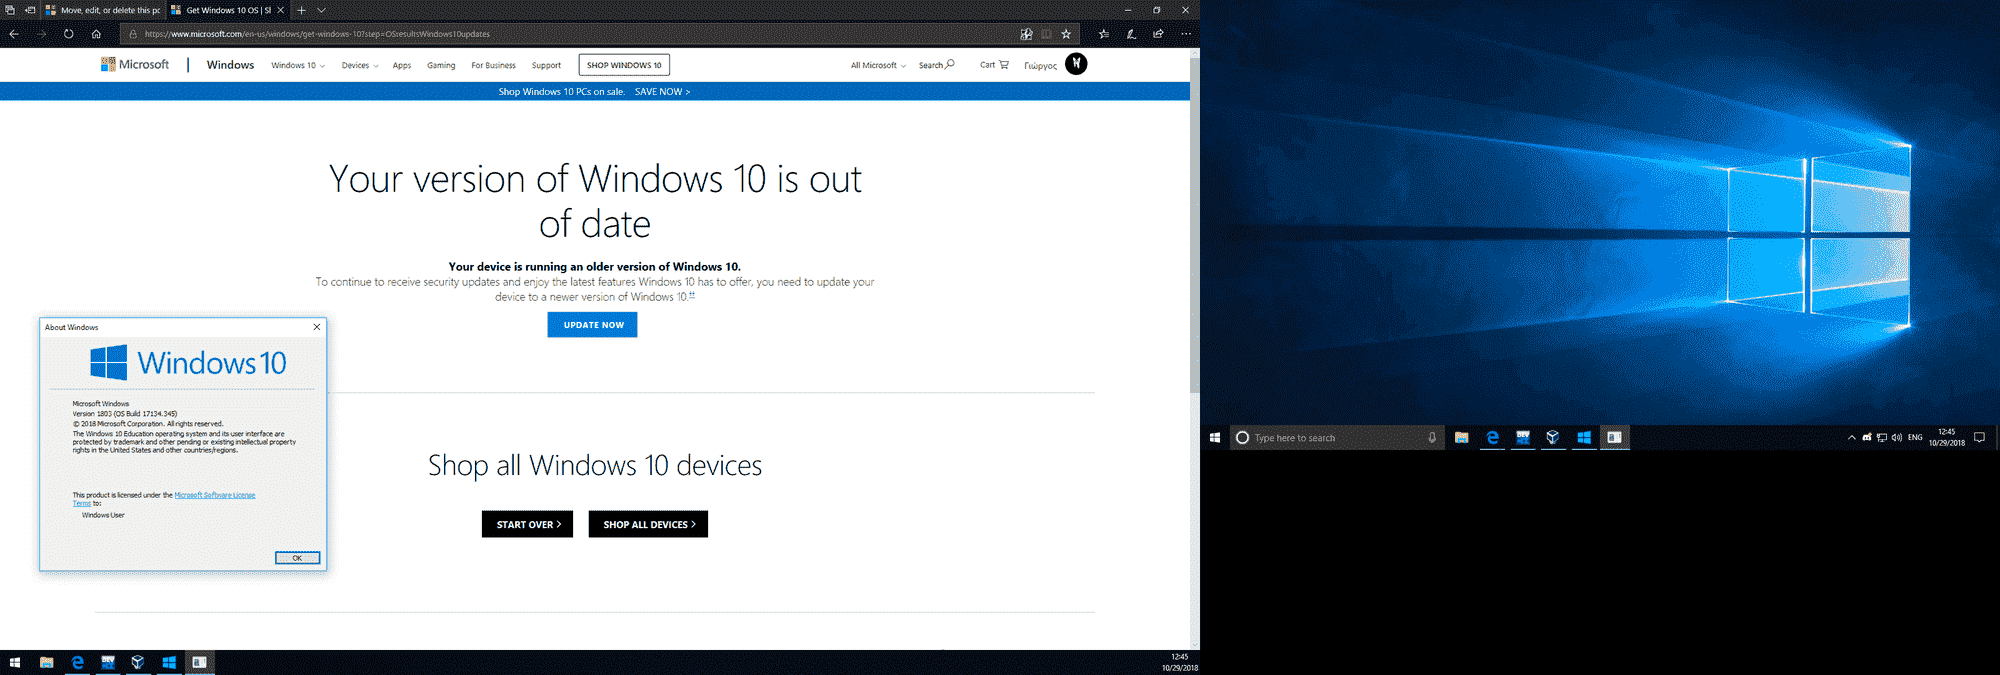 Windows 10 1809 didn't install 115cfef7-6f22-4605-bc13-0ff72cc15d77?upload=true.png